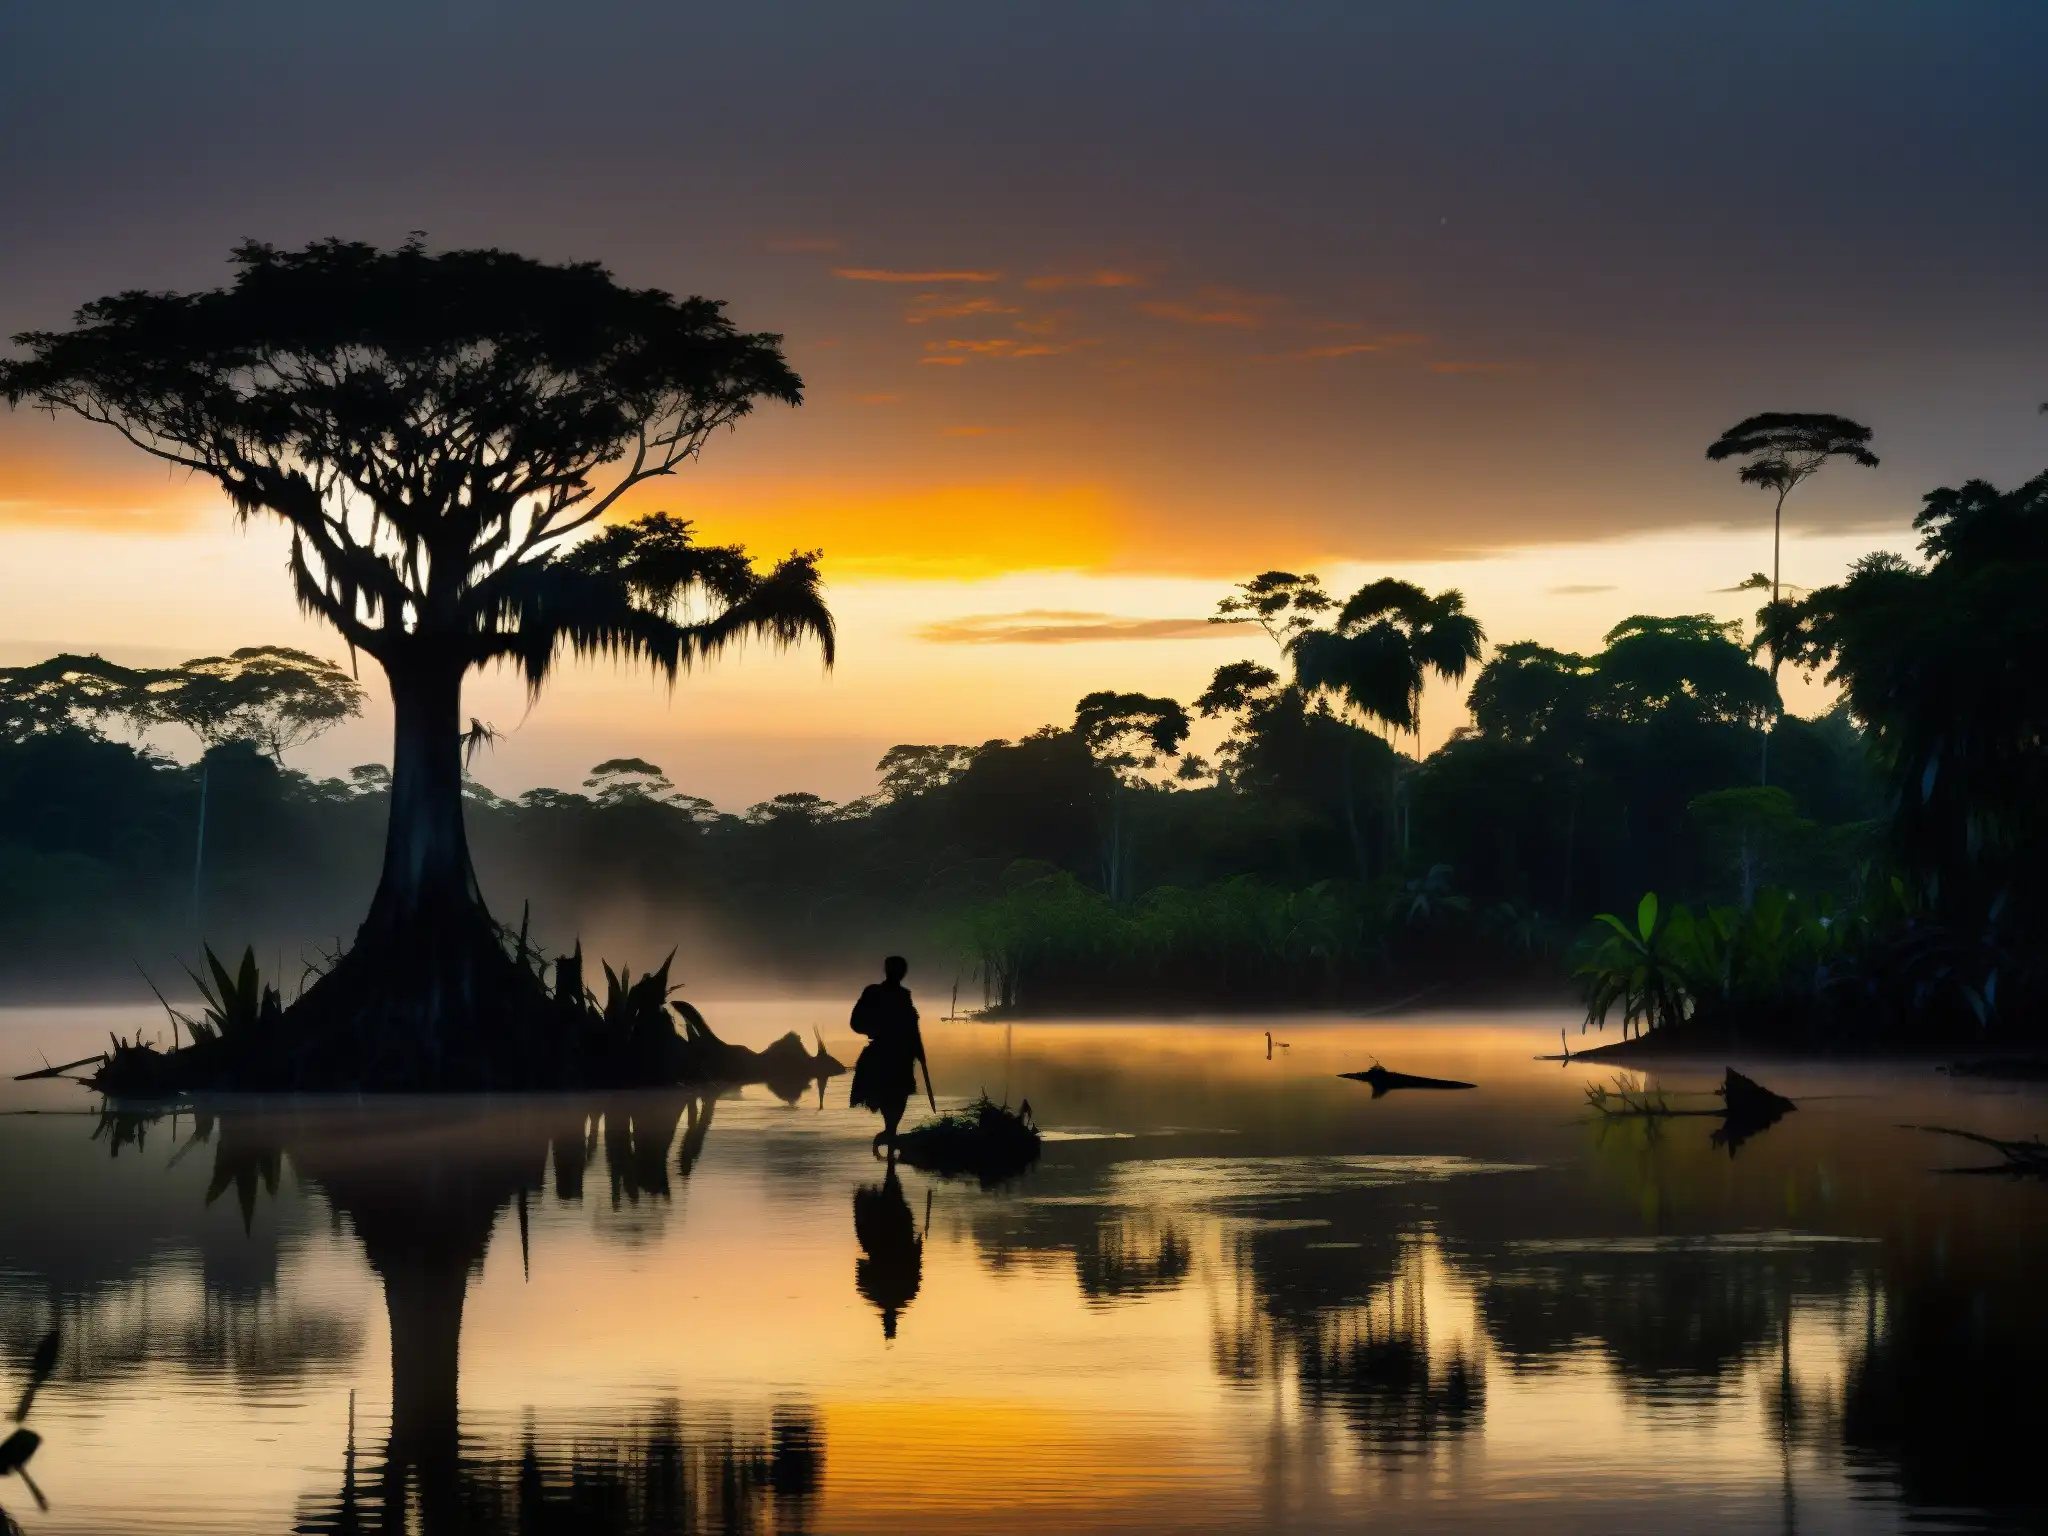 La verdad detrás de la leyenda del Hombre Caimán emerge en el misterioso atardecer del Amazonas